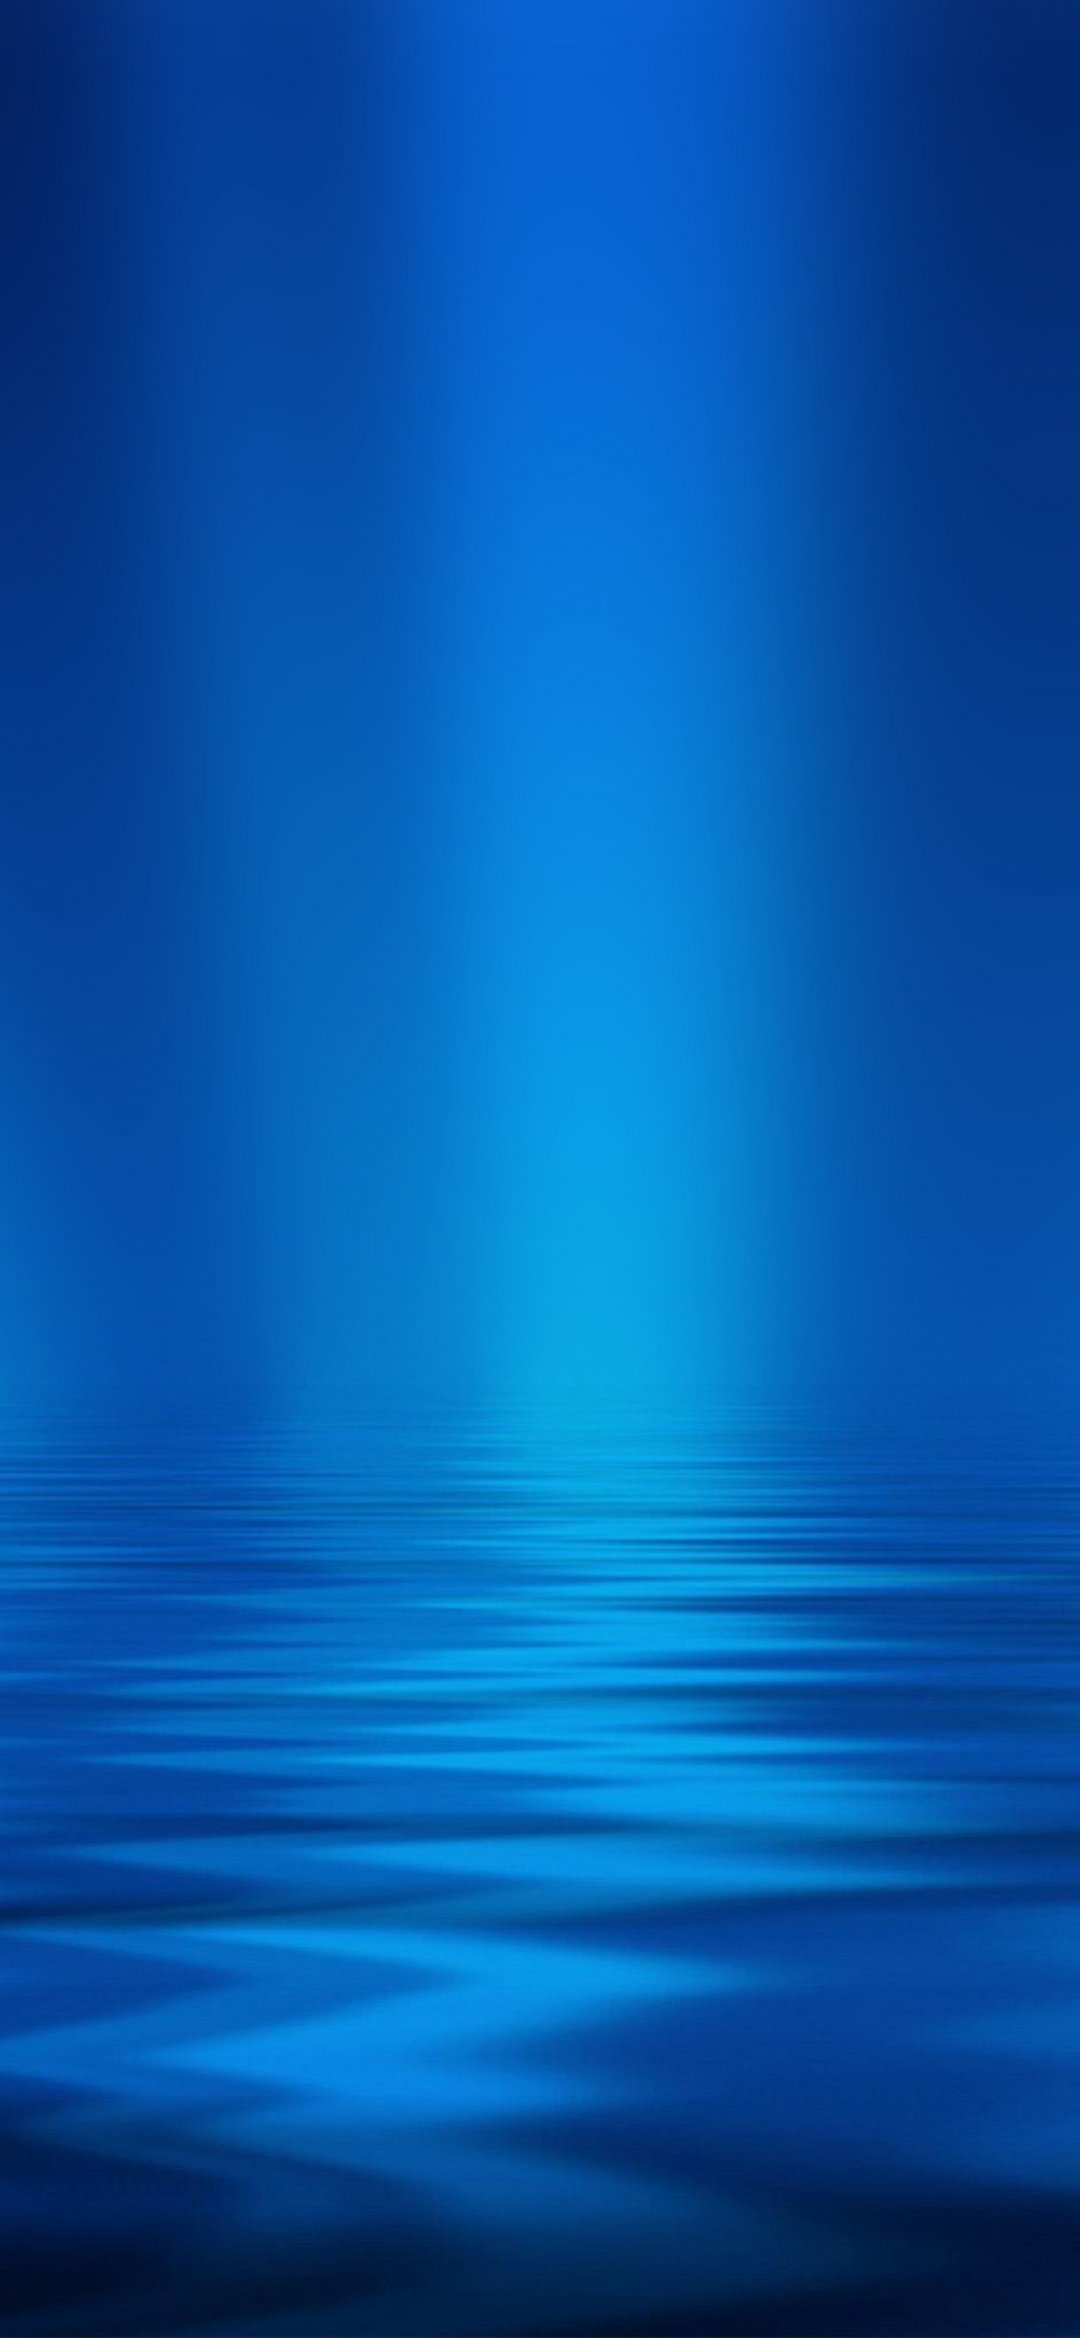 海蓝色波纹图案,高清图片,手机壁纸